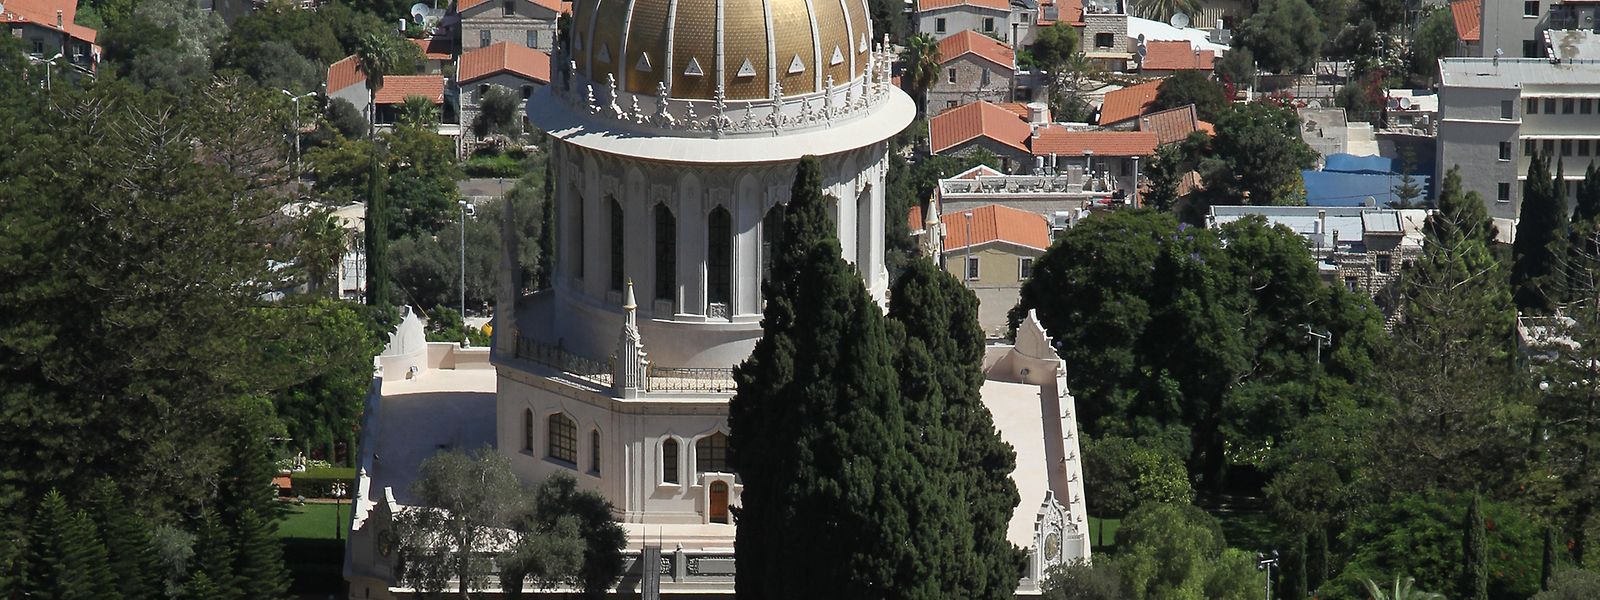 Israel ist das Zentrum der Bahá'í: Der Schrein des Bab und die imposante Gartenanlage prägen das Stadtbild von Haifa.